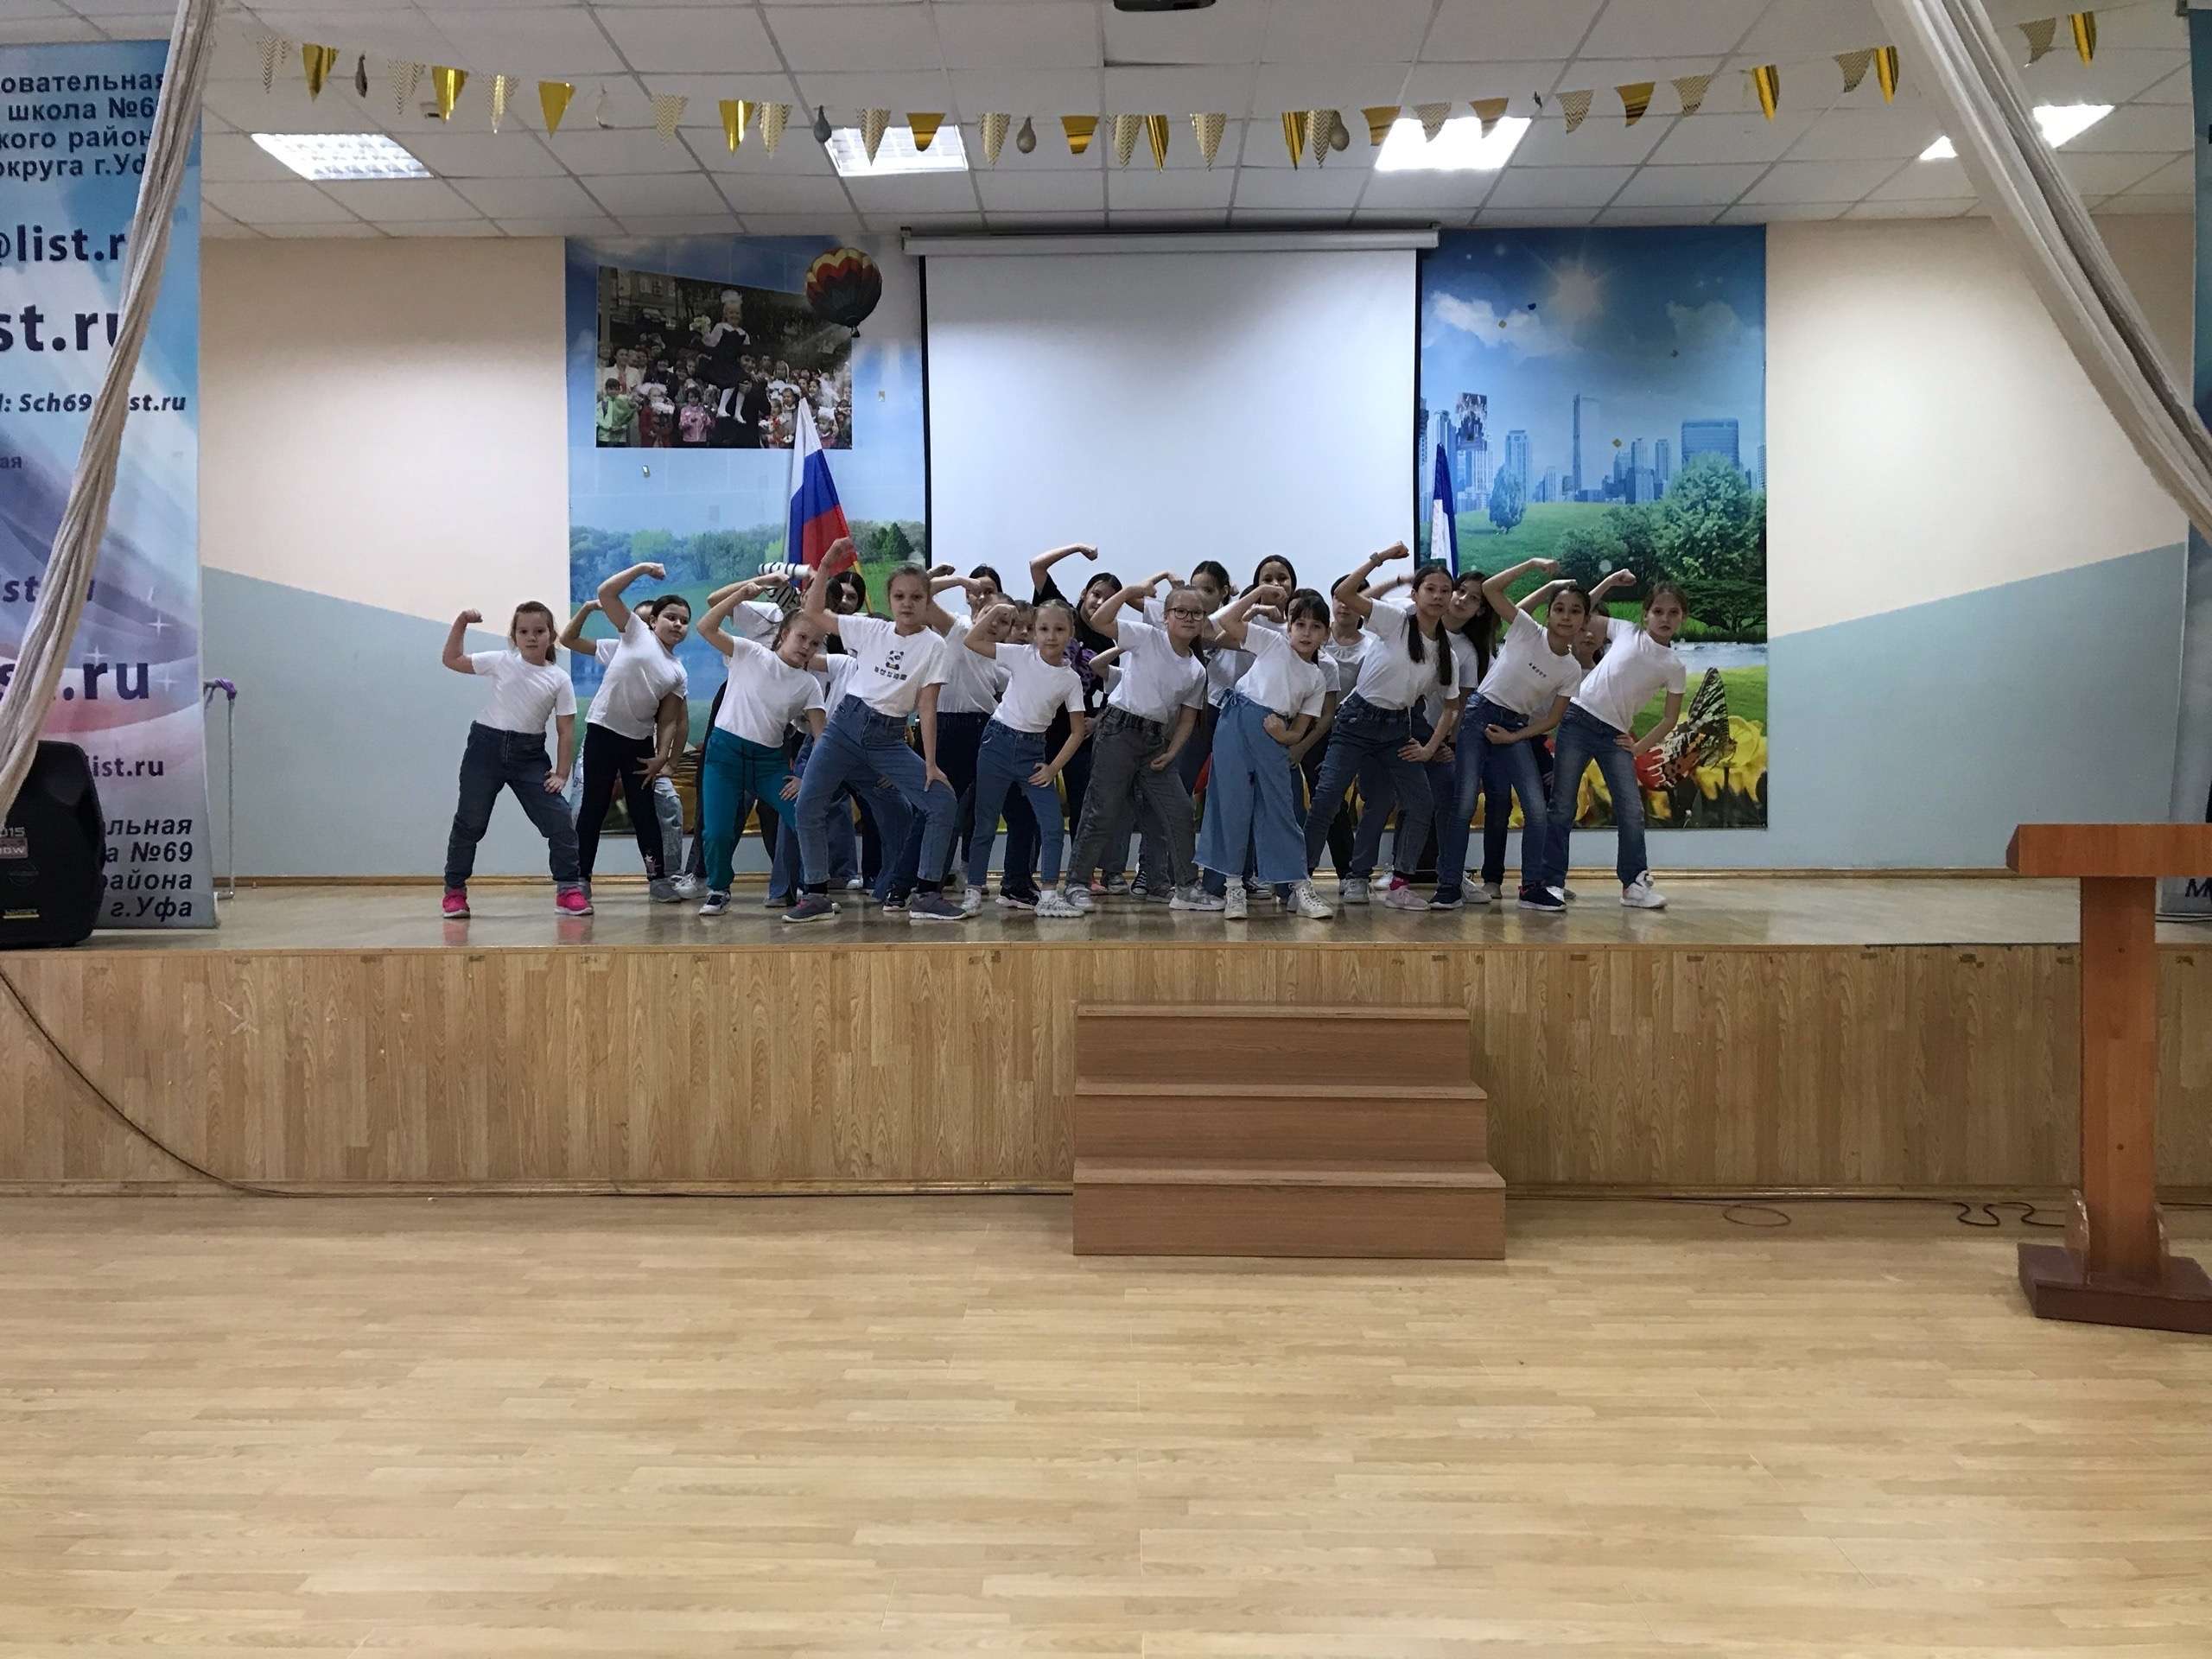 Сегодня в «Центре образования 69» как и во многих школах города Уфы , прошло очень серьезное мероприятие,  Открытие Первичного отделения Всероссийского движения детей и молодёжи «Движение Первых»